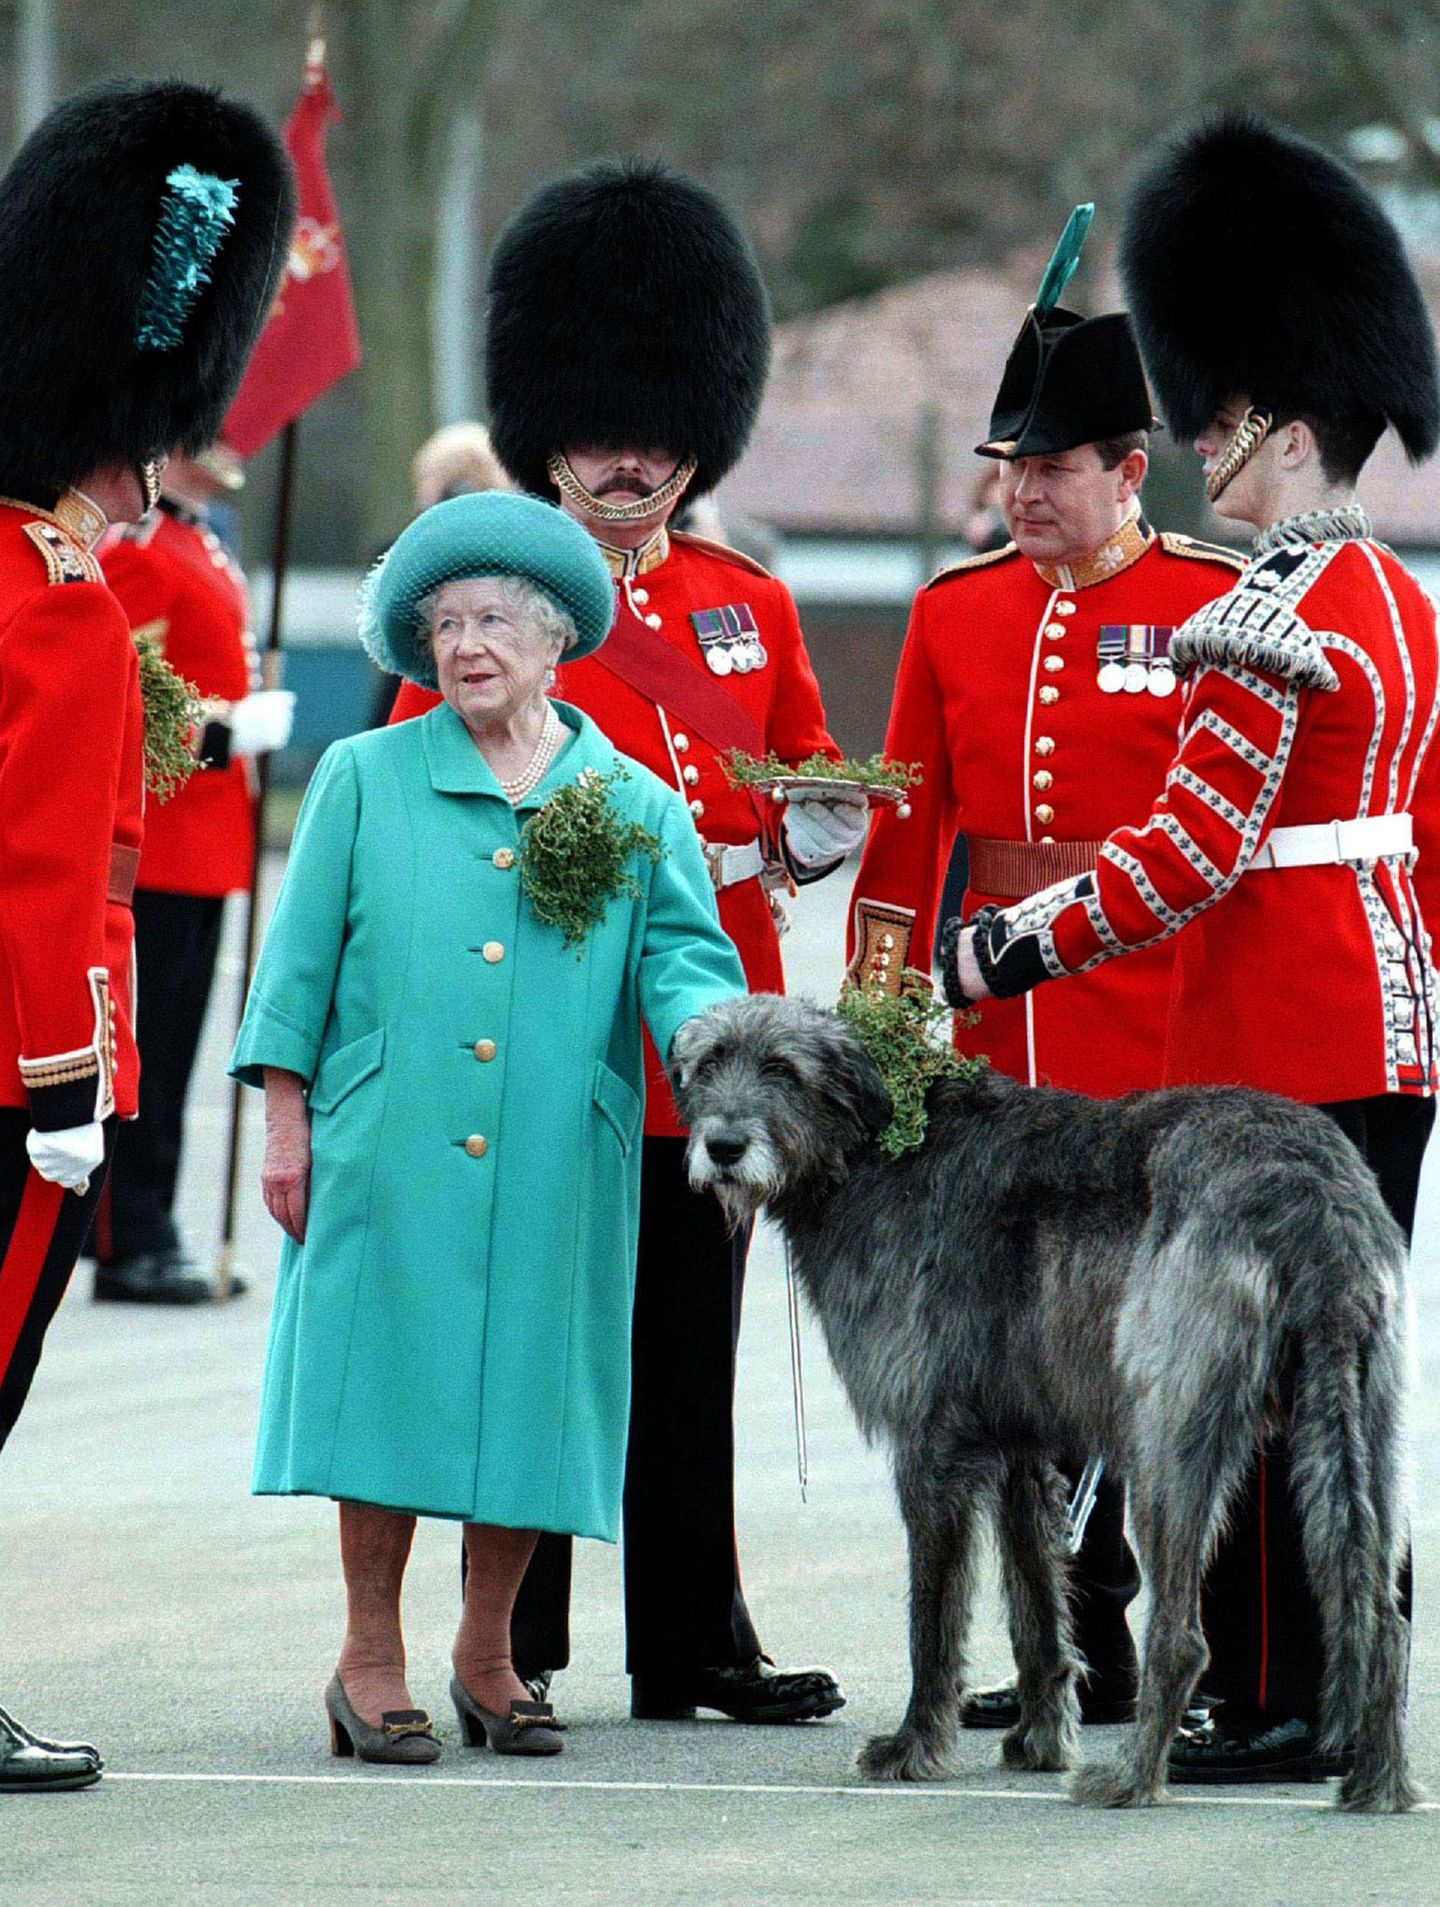 Queen Mum begegnet am St. Patricks Day 1997 einem großen Wolfshund. Das Überreichen des Kleestraußes an die Irish Guards hat inzwischen Herzogin Catherine übernommen, die in High Heels den Hund auch deutlich mehr überragt ...